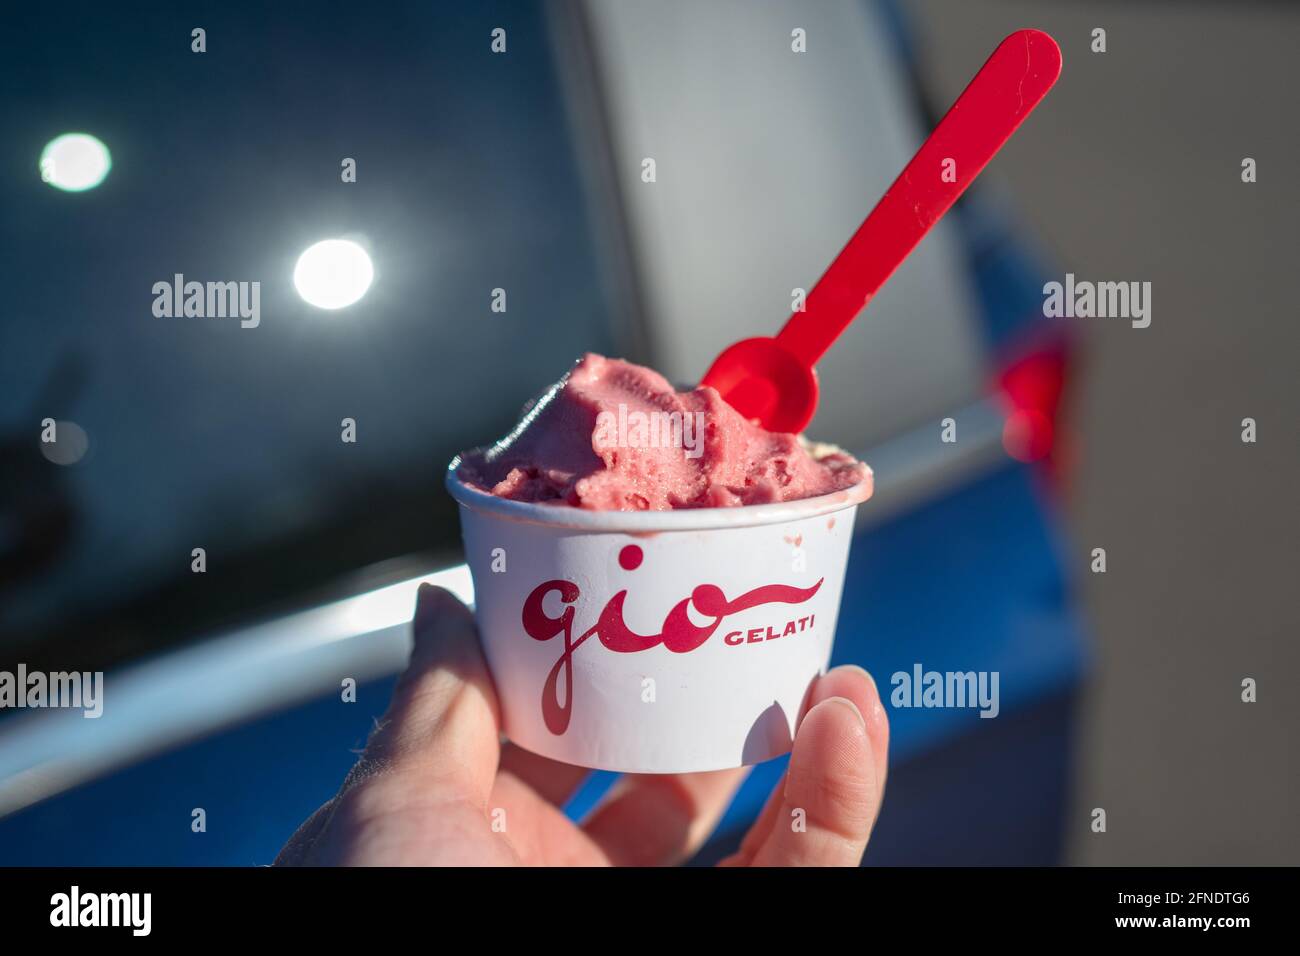 Primo piano di una persona che tiene una tazza di carta di gelato alla fragola con il logo Gio gelati visibile, a San Ramon, California, 18 dicembre 2020. () Foto Stock